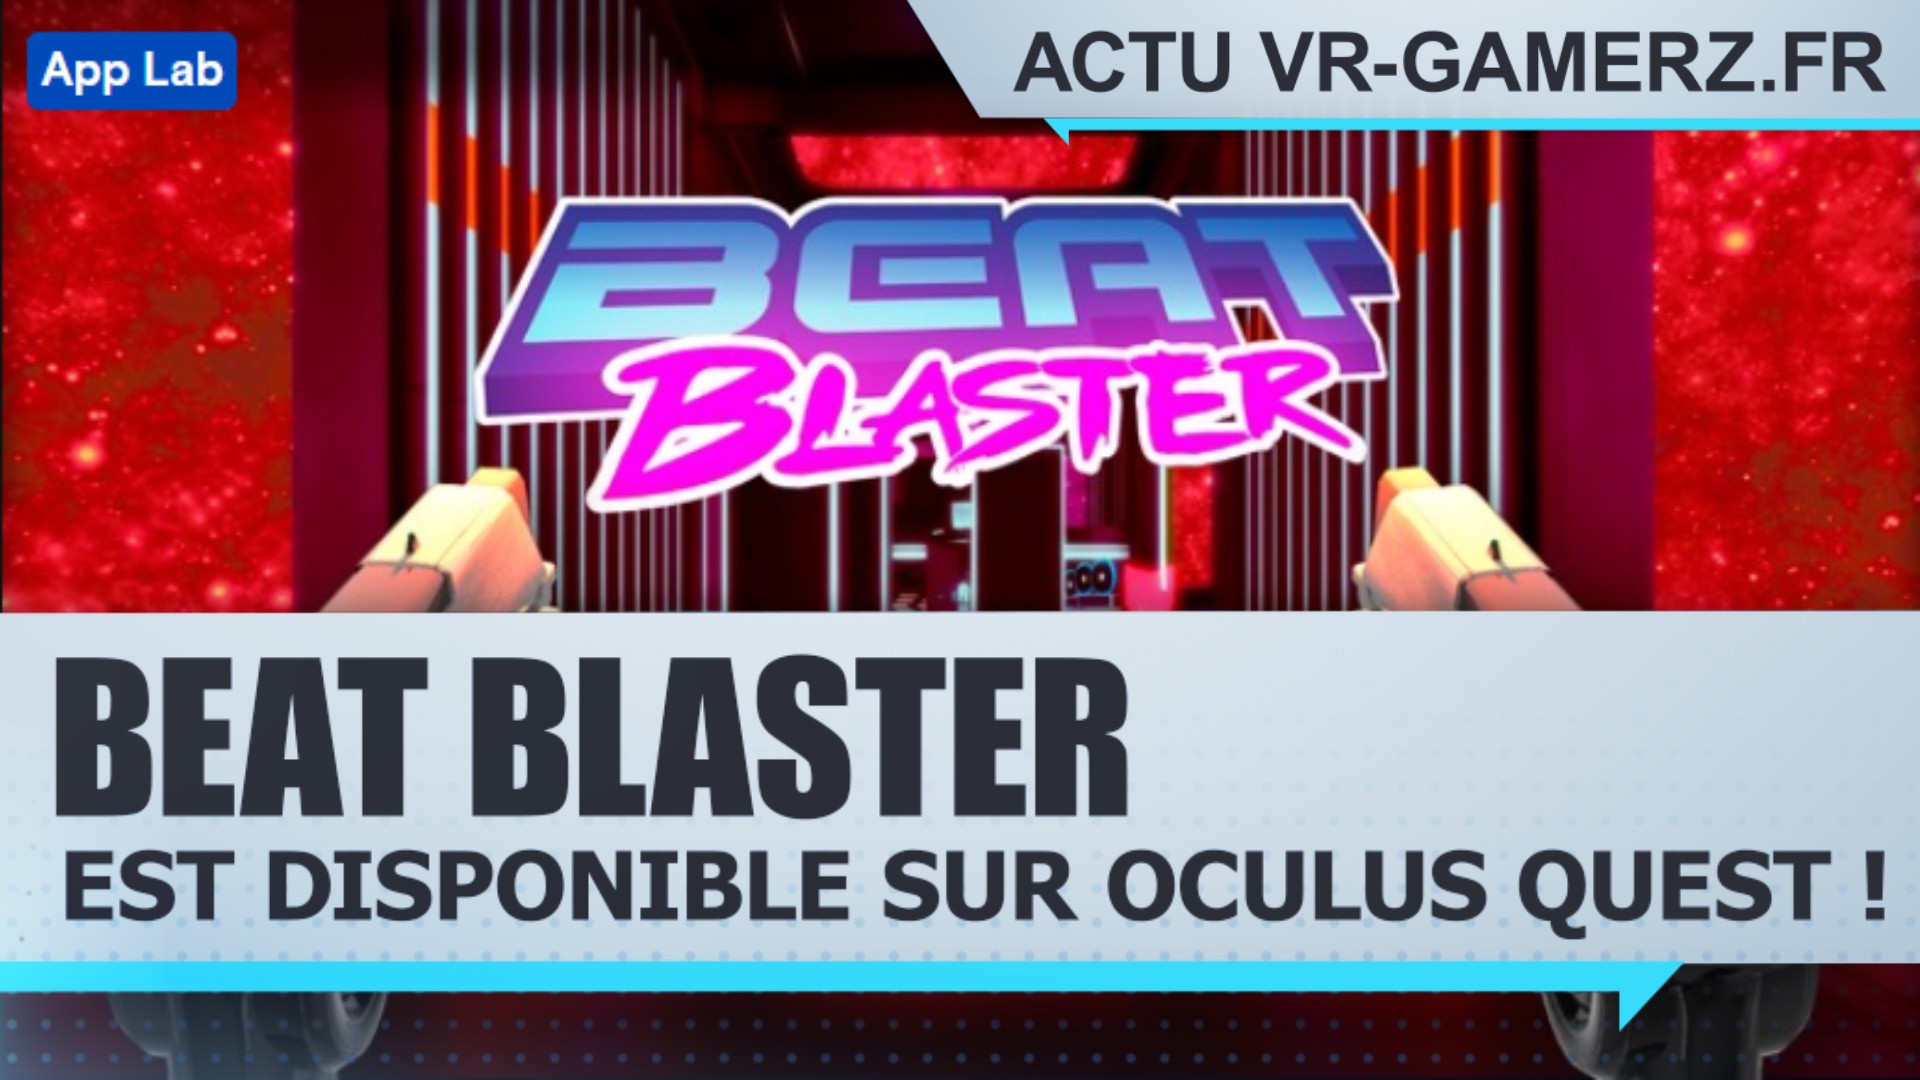 Beat Blaster est disponible sur Oculus quest !